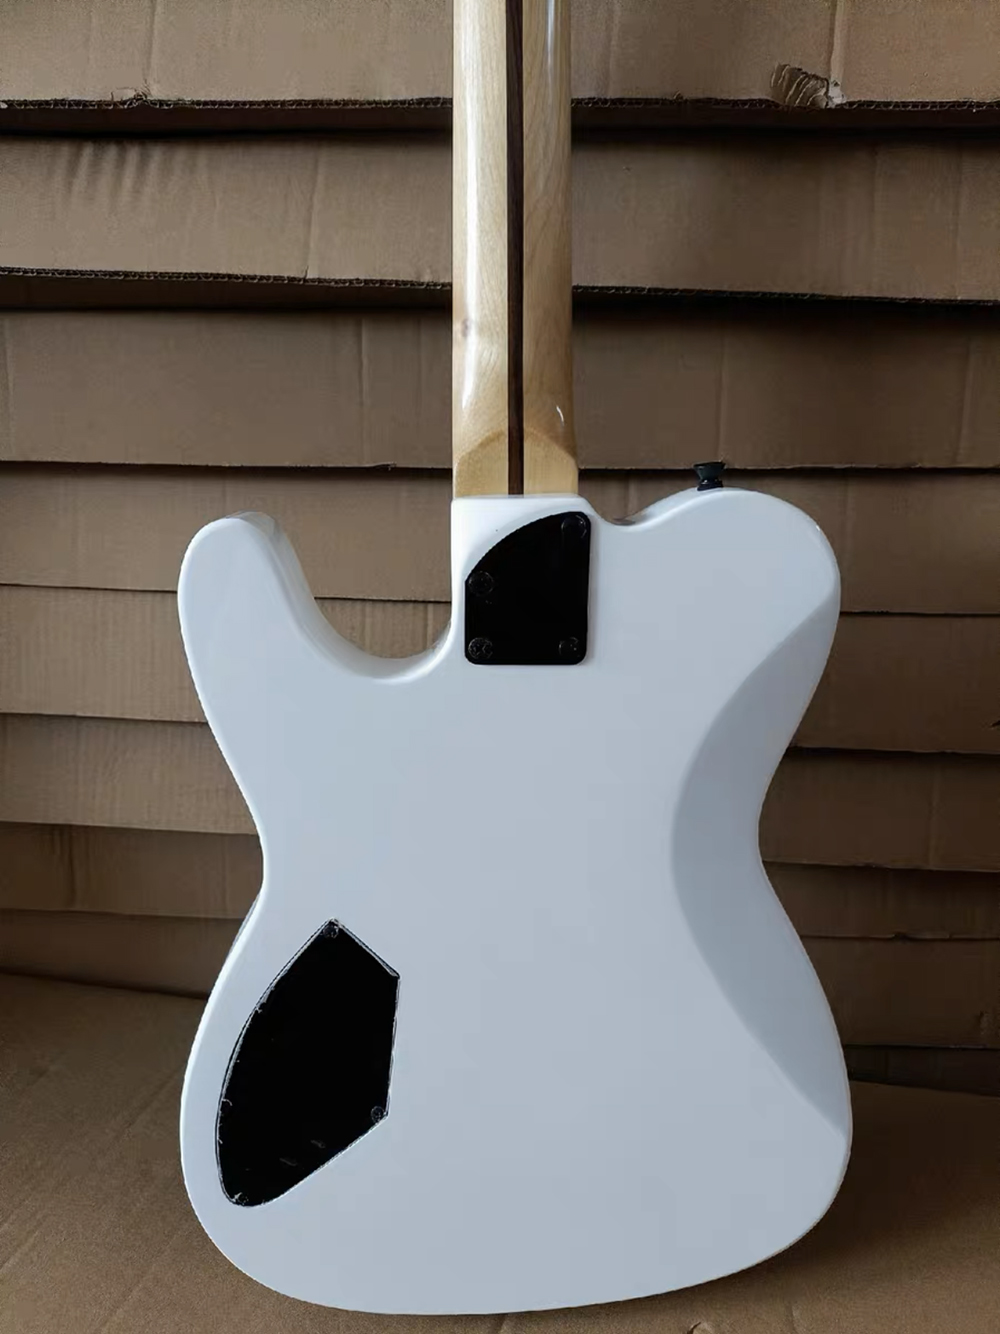 TL – guitare électrique blanche plate AS Jim Root, boutons de verrouillage, touche en palissandre, haute qualité, Direct usine